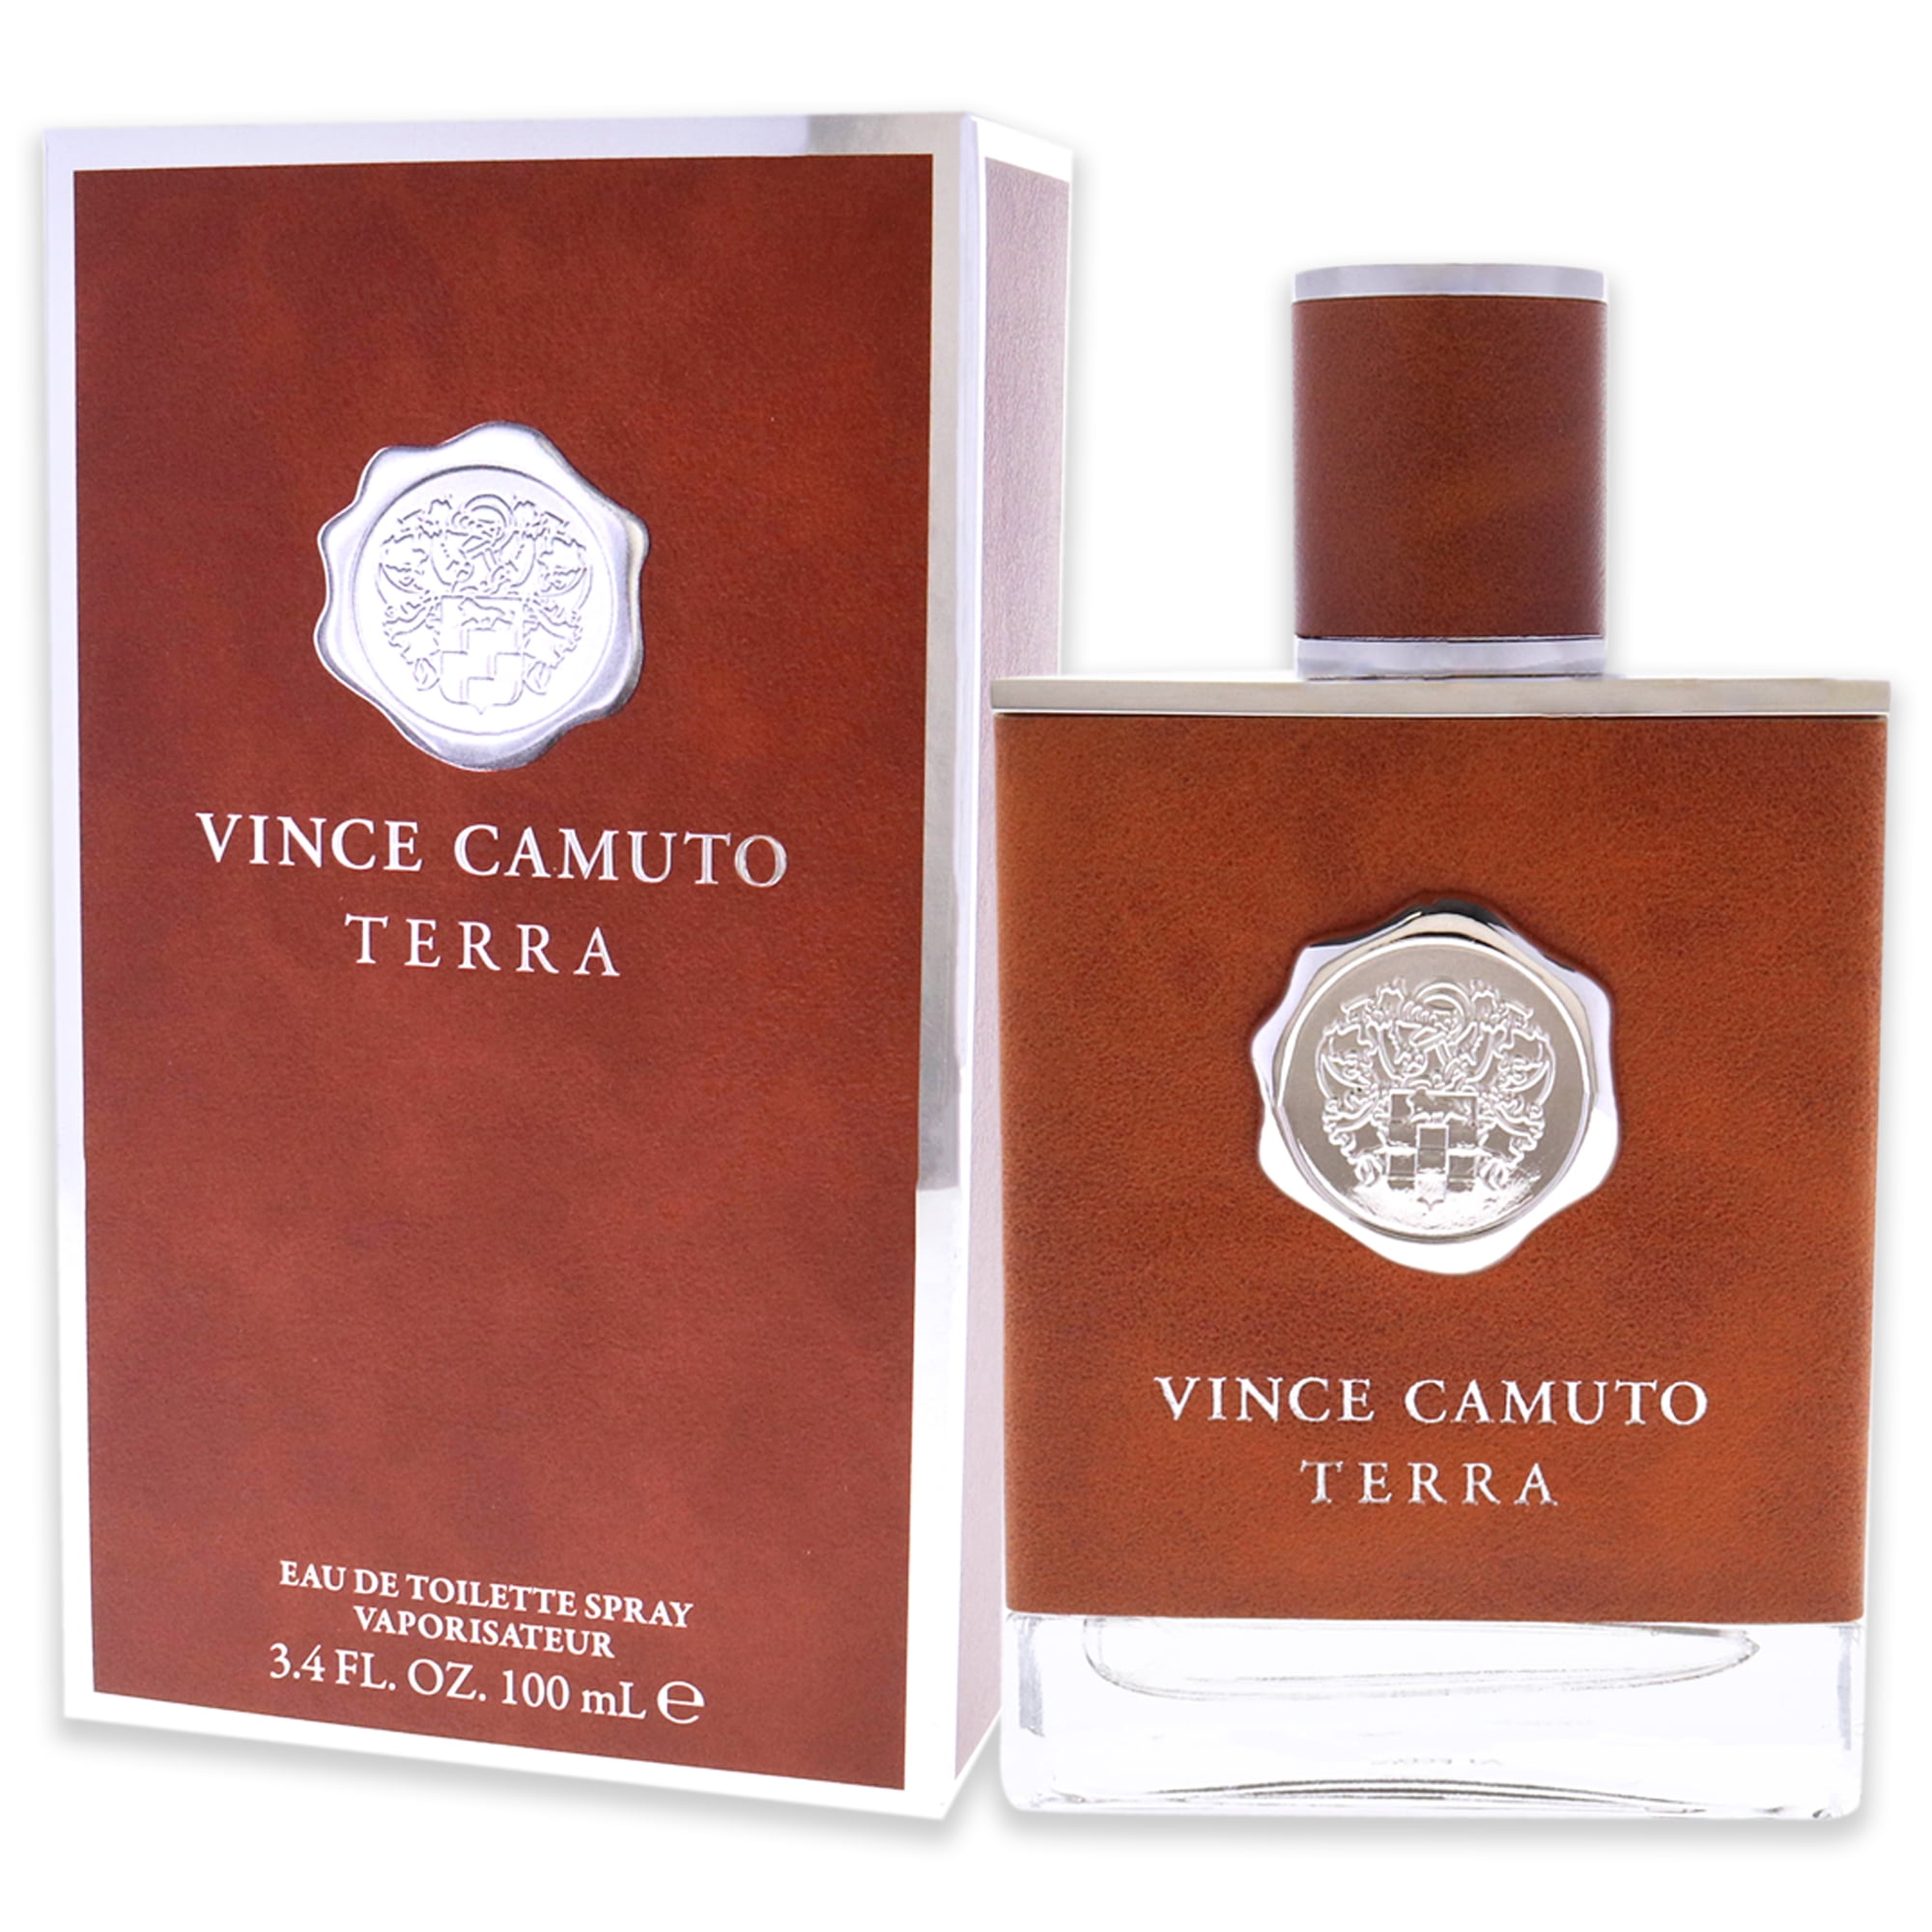 Buy Vince Camuto Terra Extreme Men Set Eau De Parfum 100ml + 100ml After  Shave Lotion Online - Shop Beauty & Personal Care on Carrefour UAE